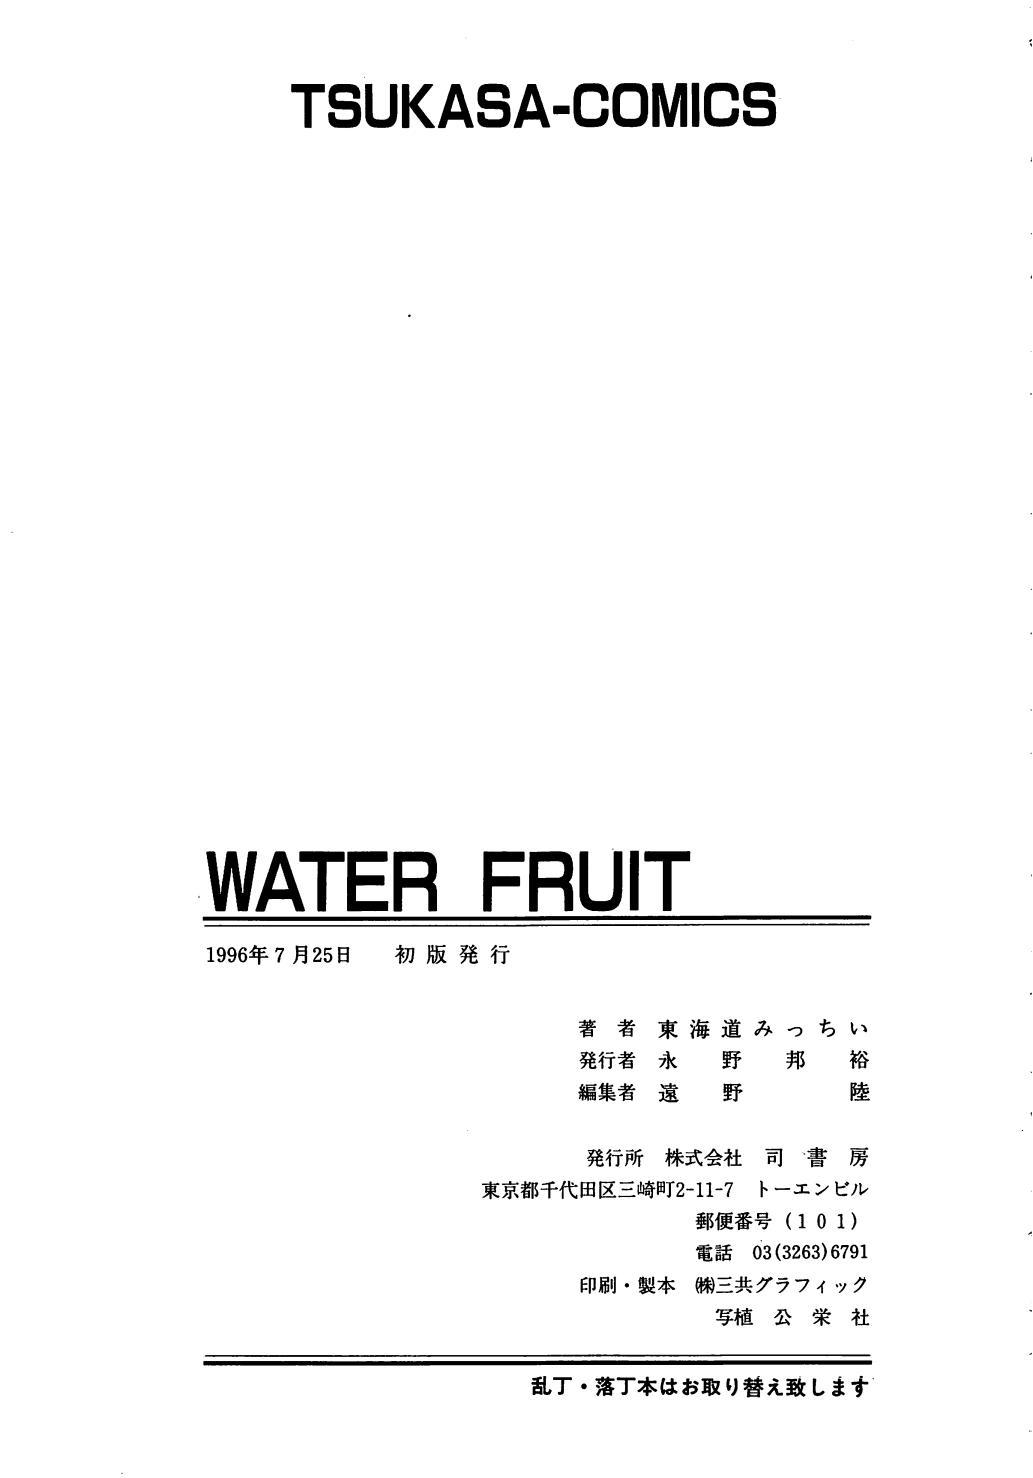 Water Fruit 170